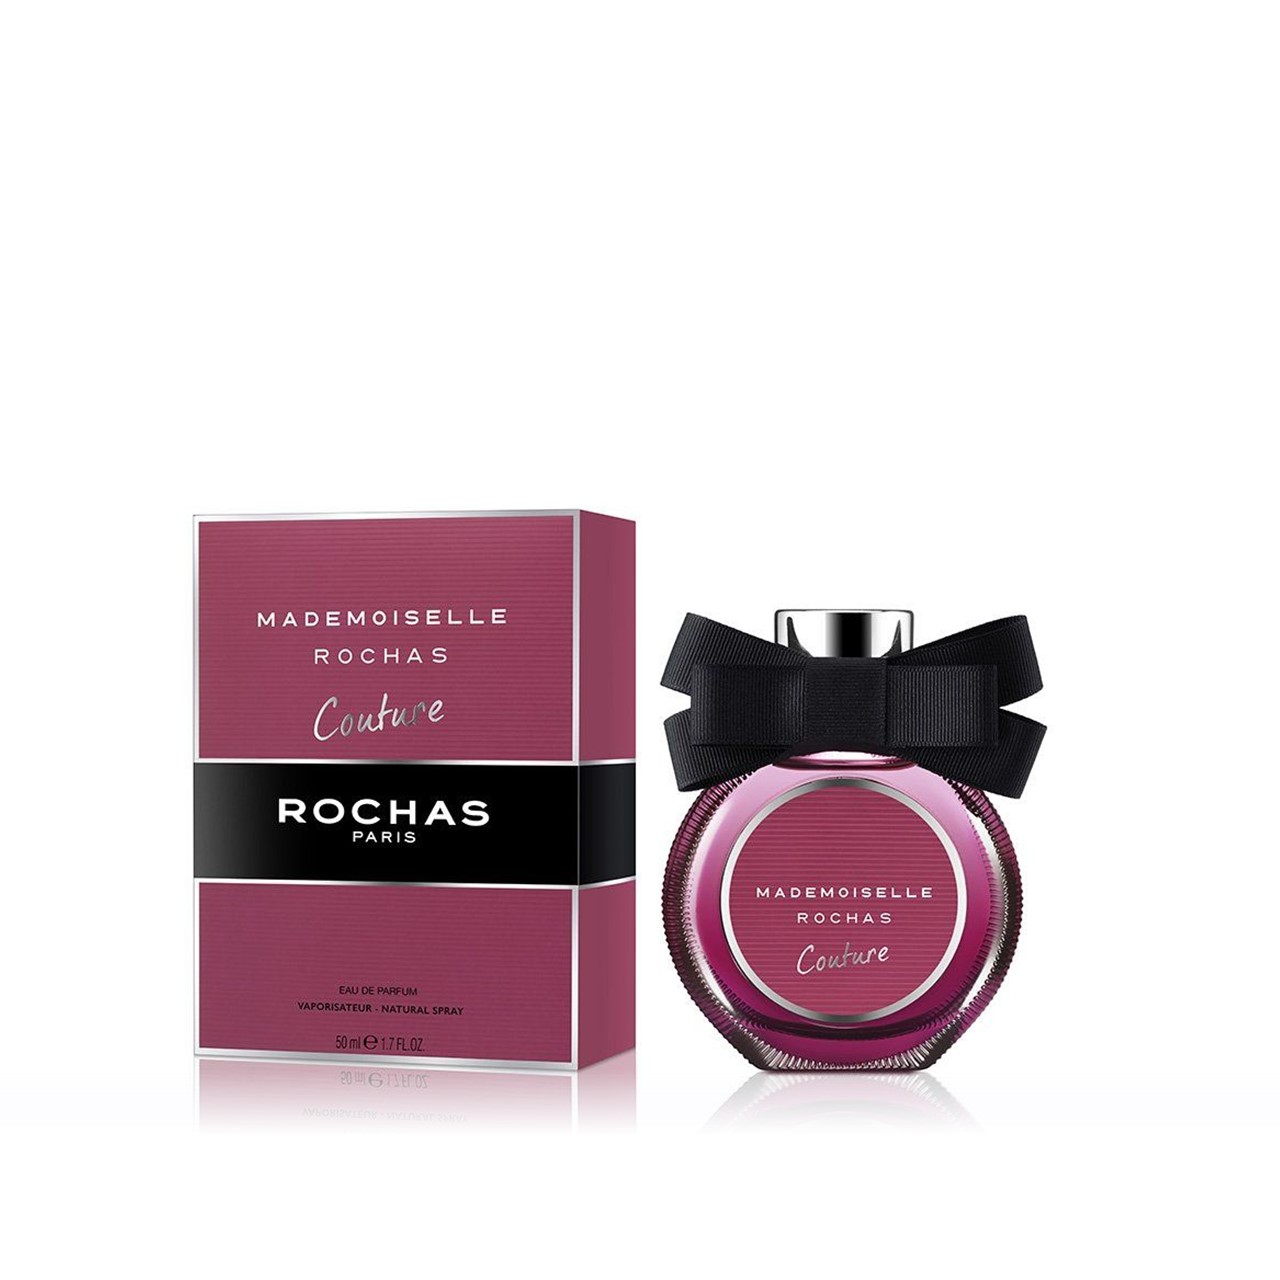 Rochas Mademoiselle Rochas Couture Eau de Parfum 50ml (1.7fl oz)